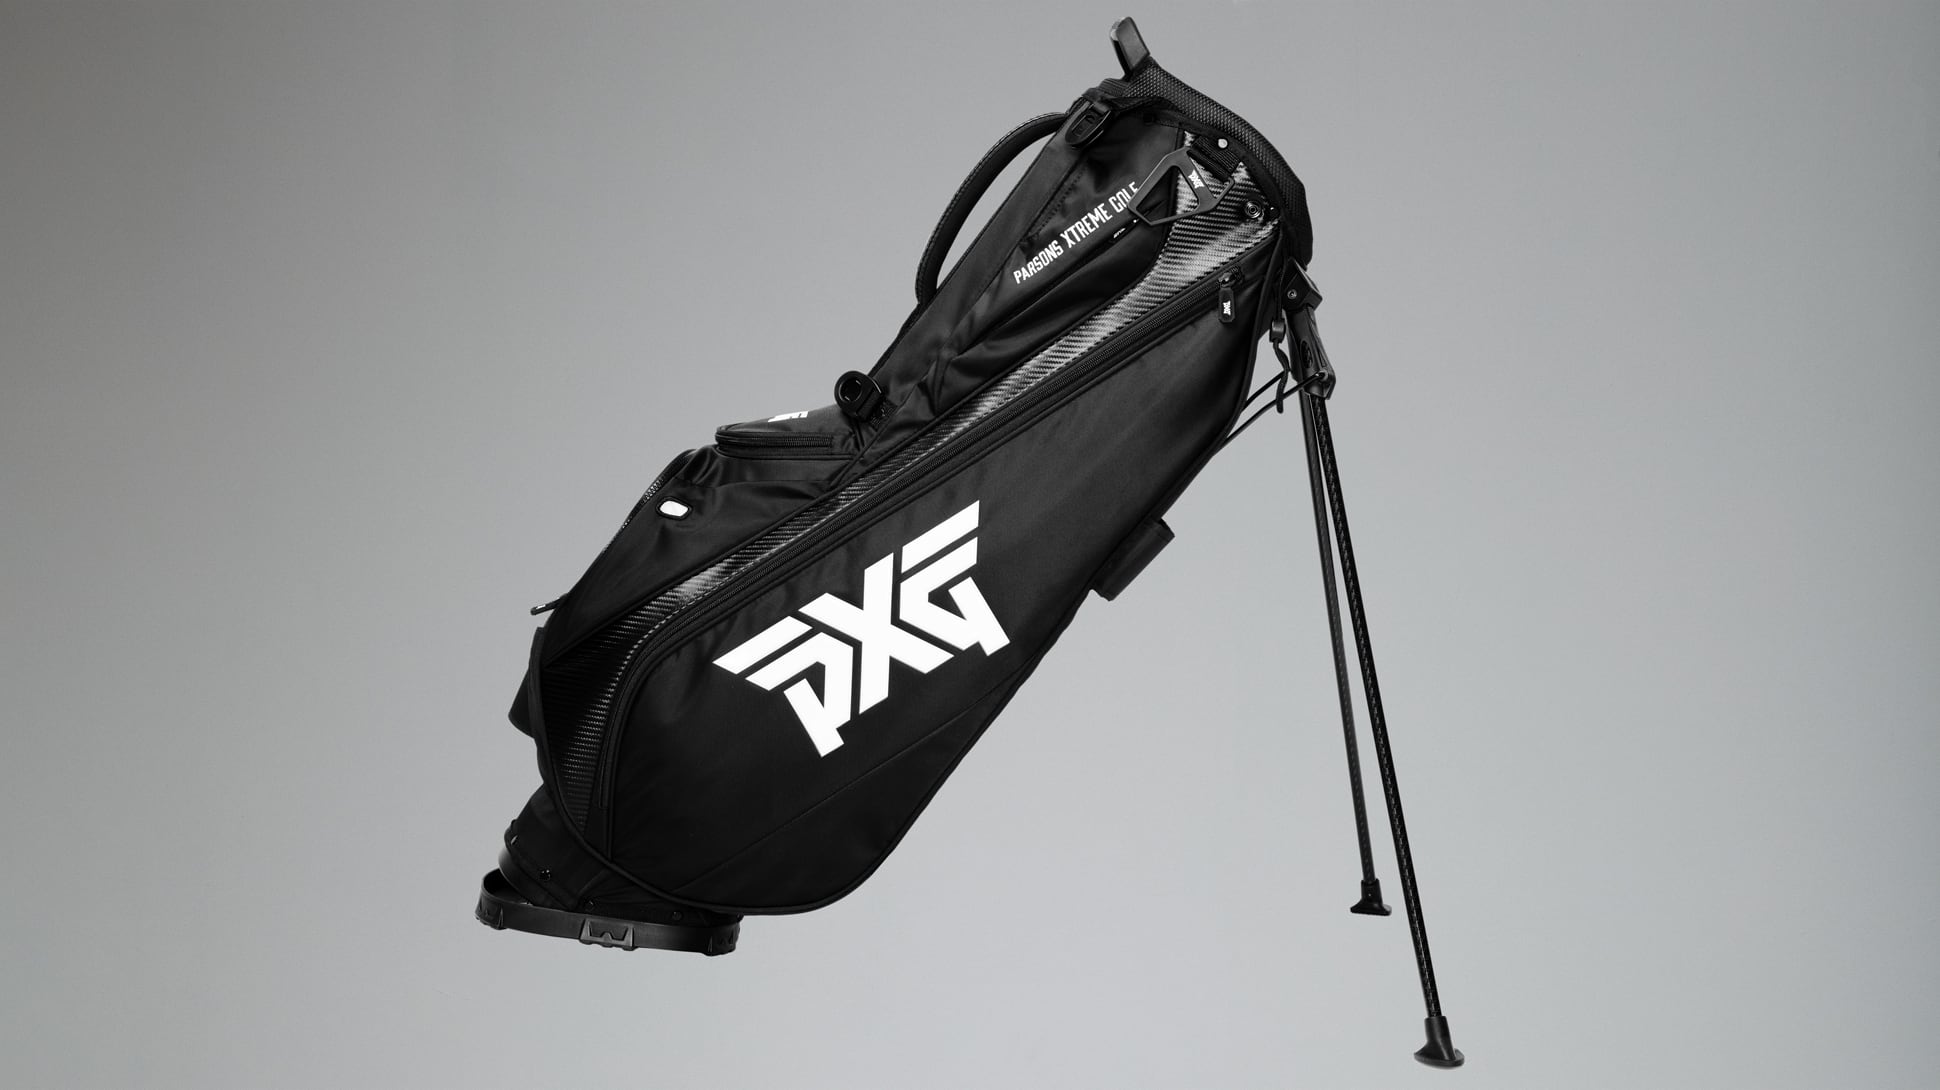 Túi đứng đựng gậy golf PXG Camo chính hãng tại skygolf